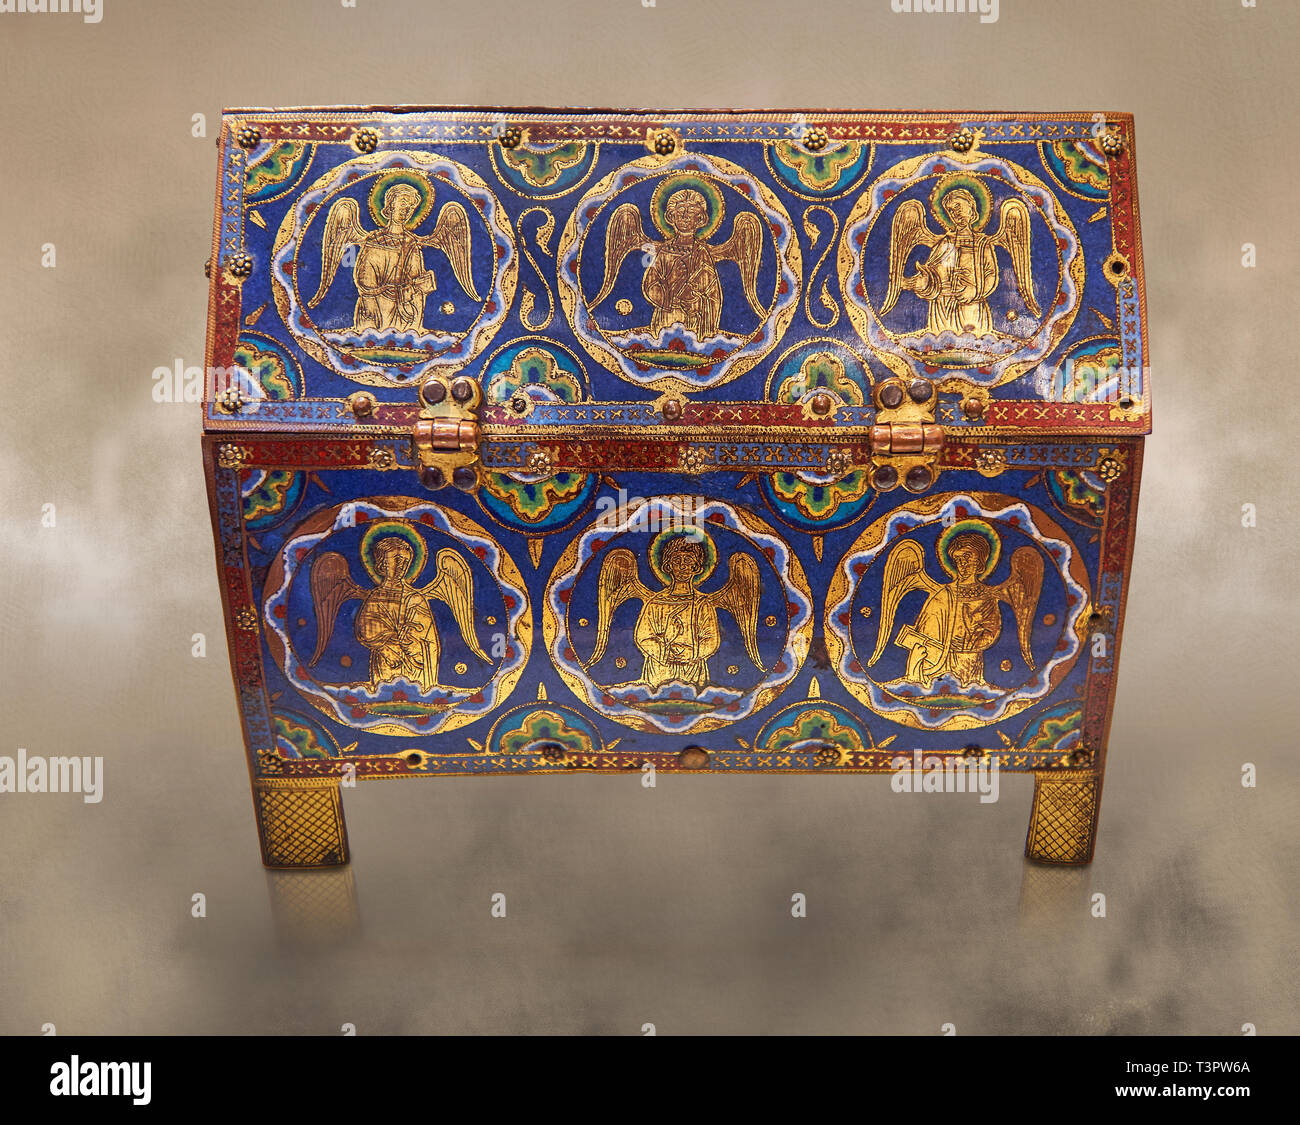 Boîte en émail médiéval représentant des anges, vers 12e siècle, l'émail de Limoges sur l'or. AD. Musée du Louvre, Paris. Banque D'Images